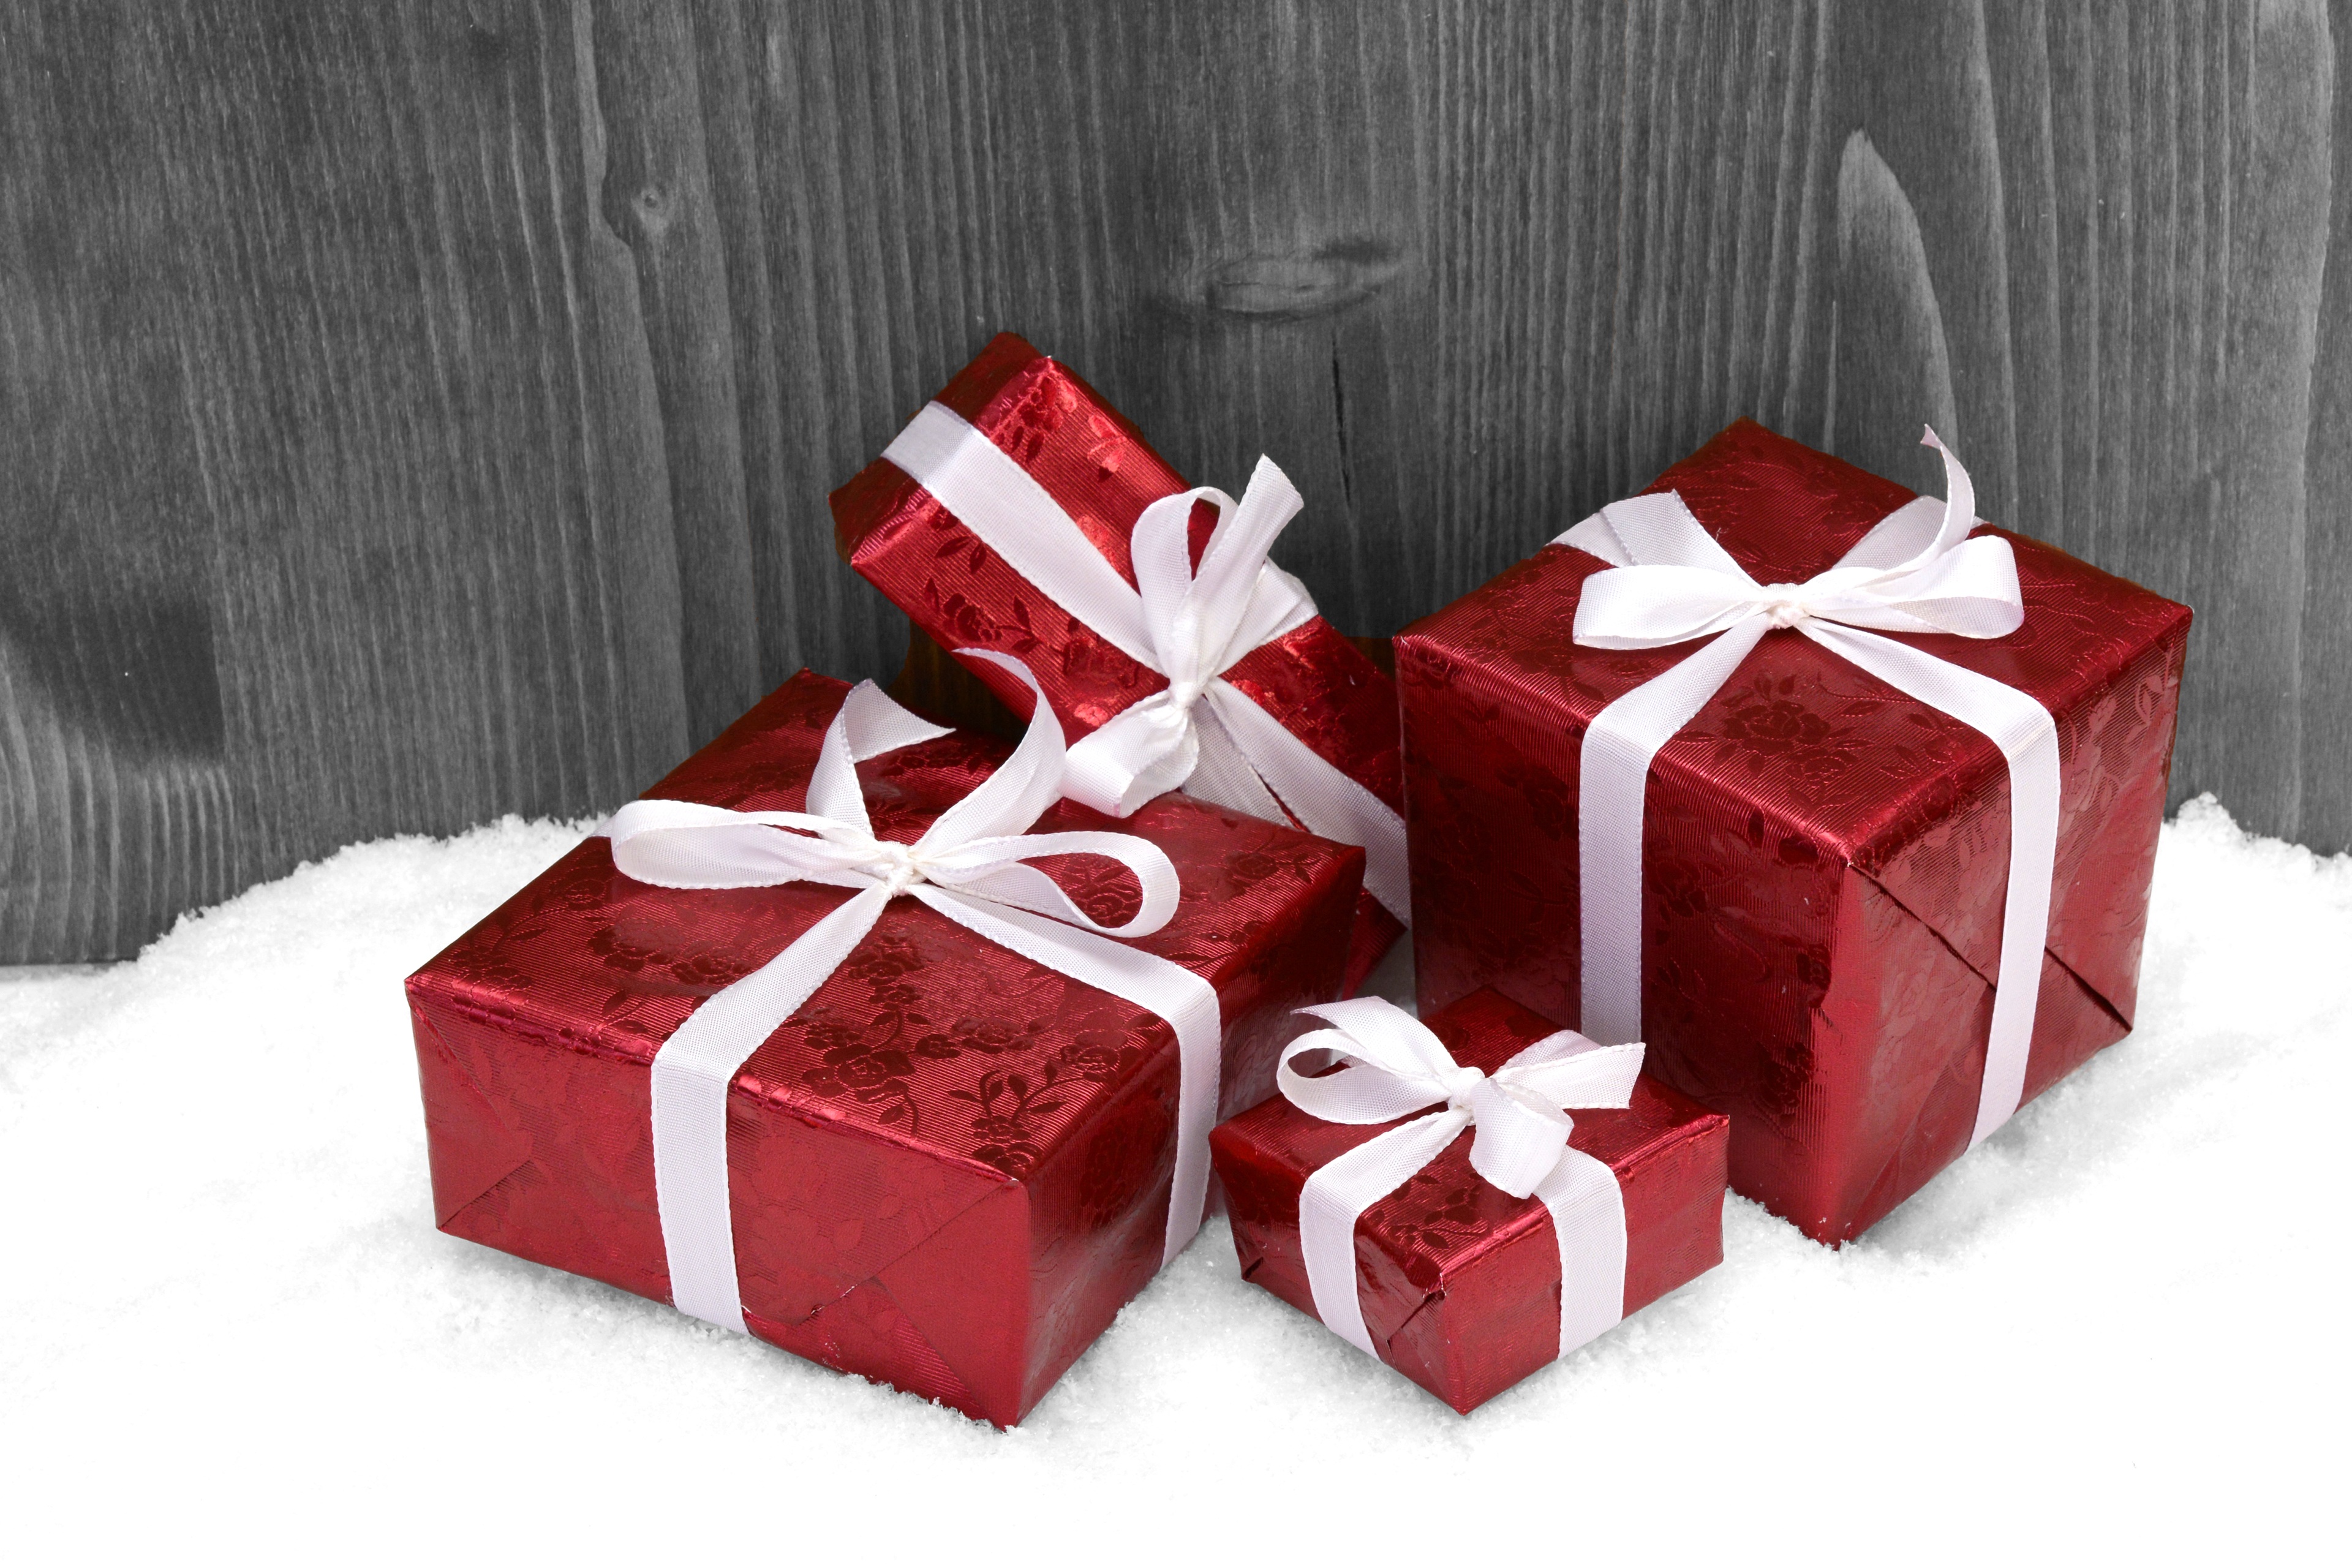 la imagen muestra unos regalos de navidad de color rojo con un lazo blanco